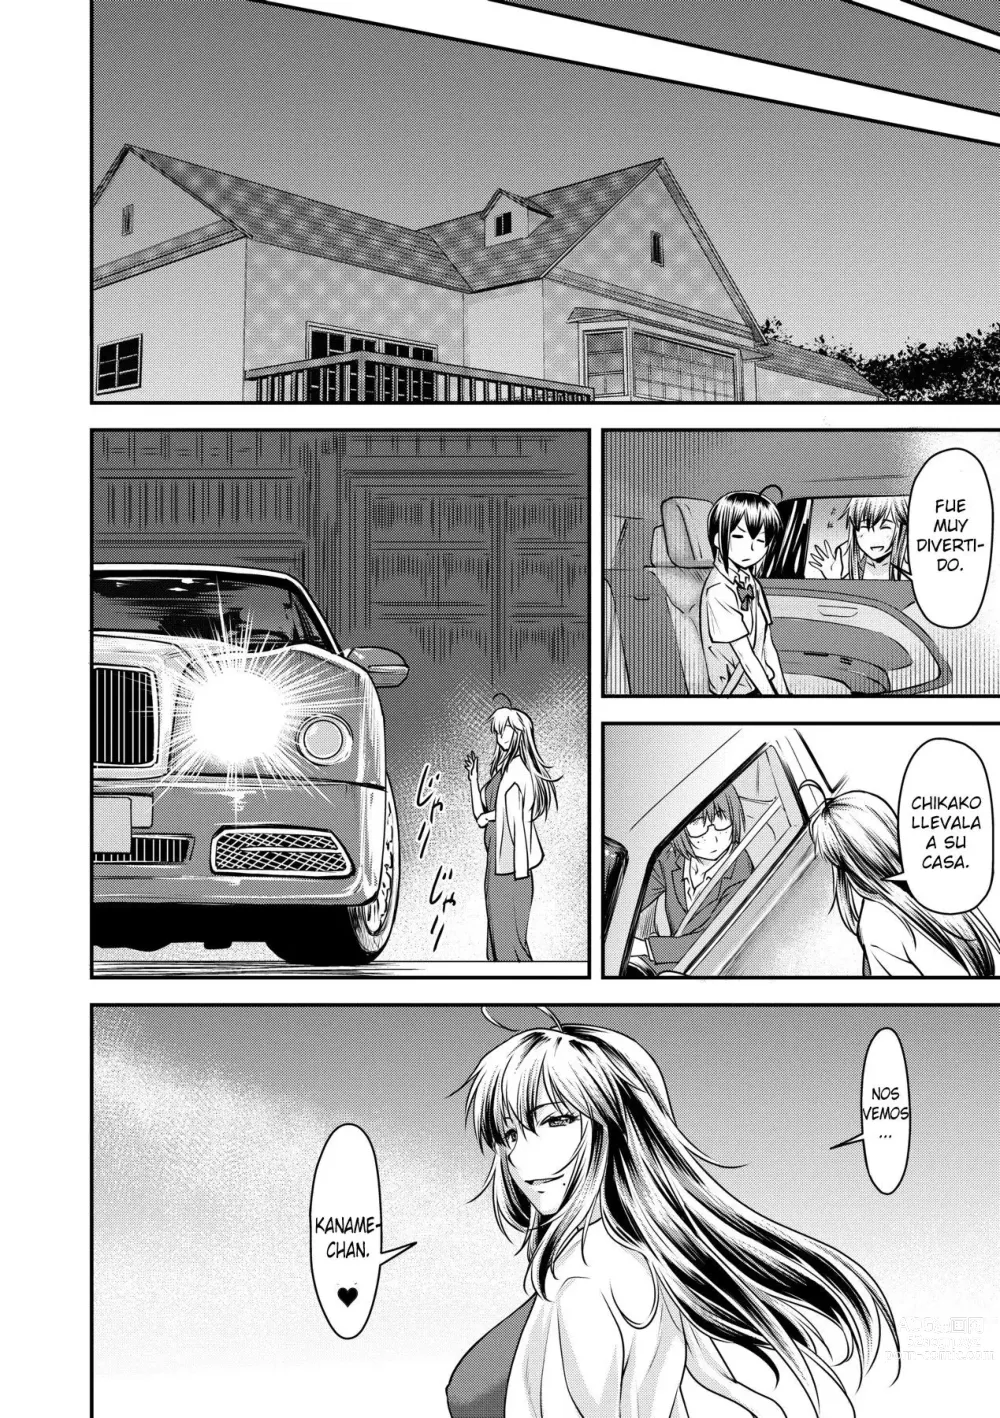 Page 187 of manga Kaname date jou